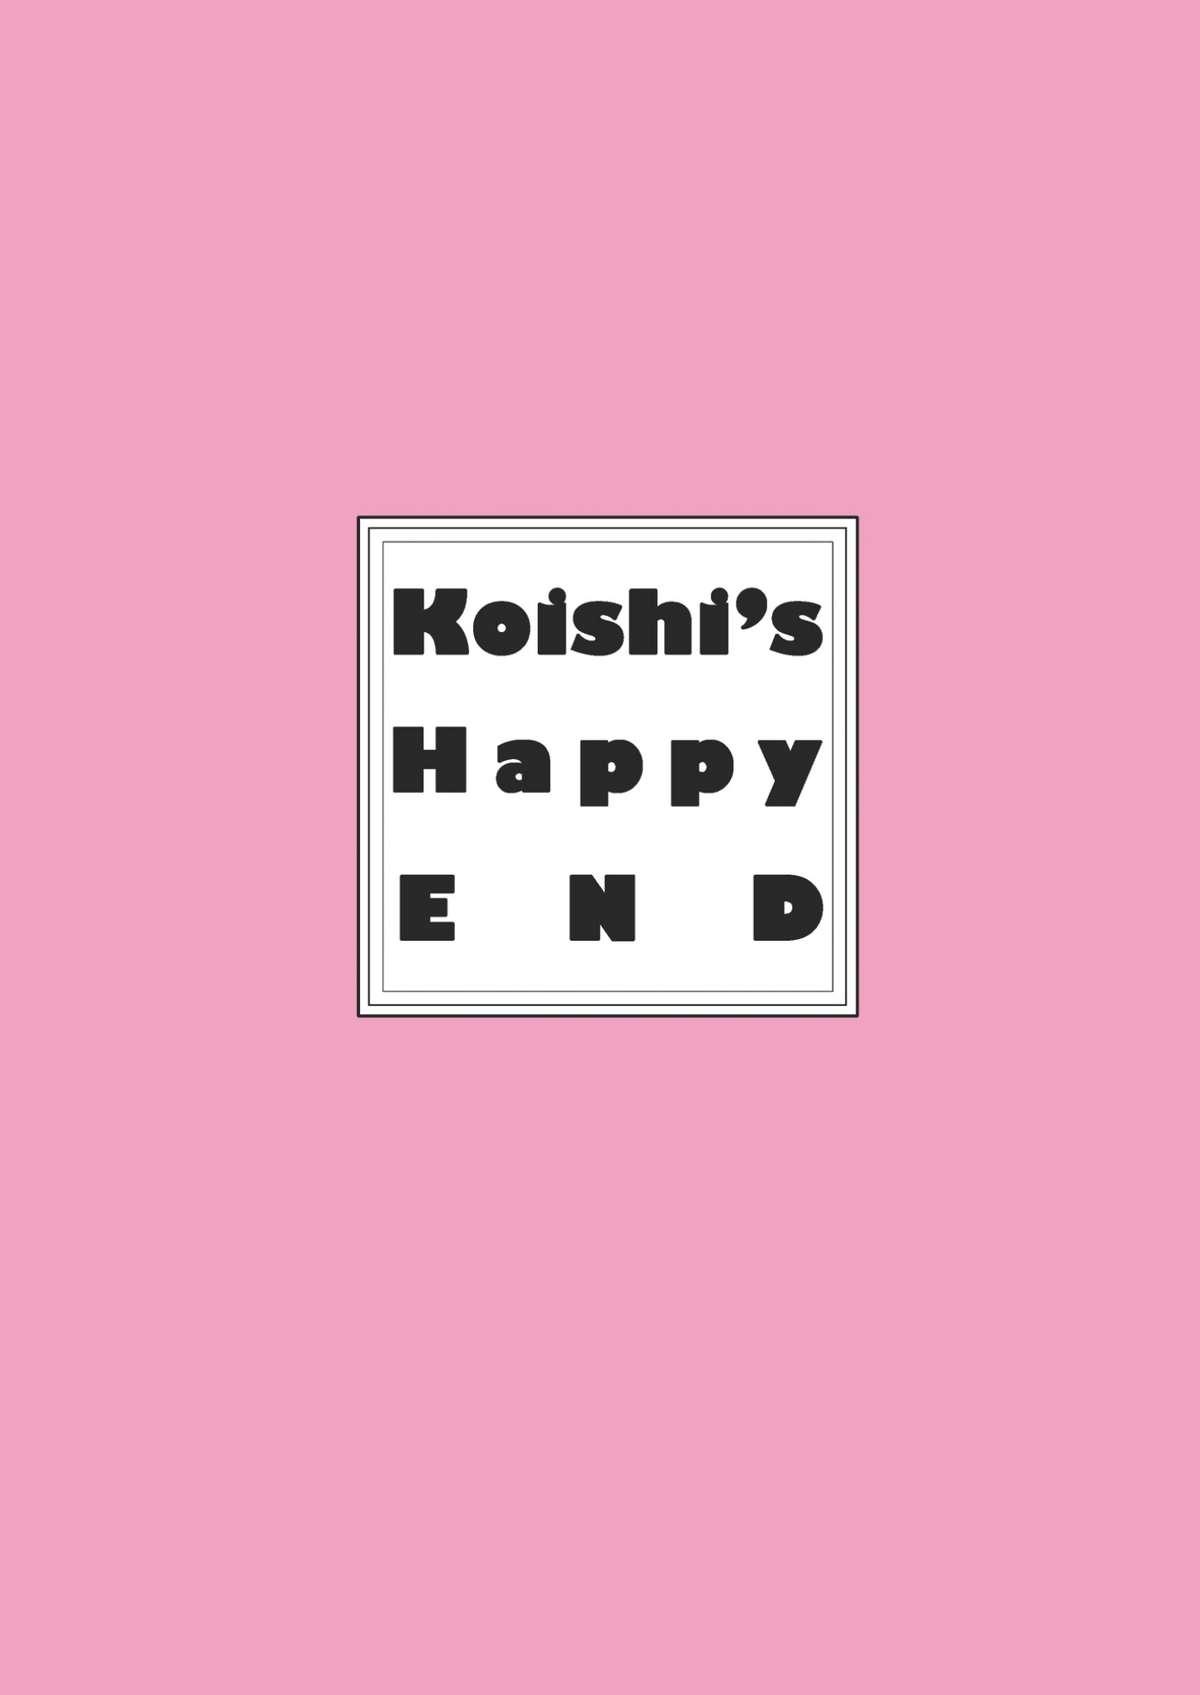 Koishi's Happy END 29